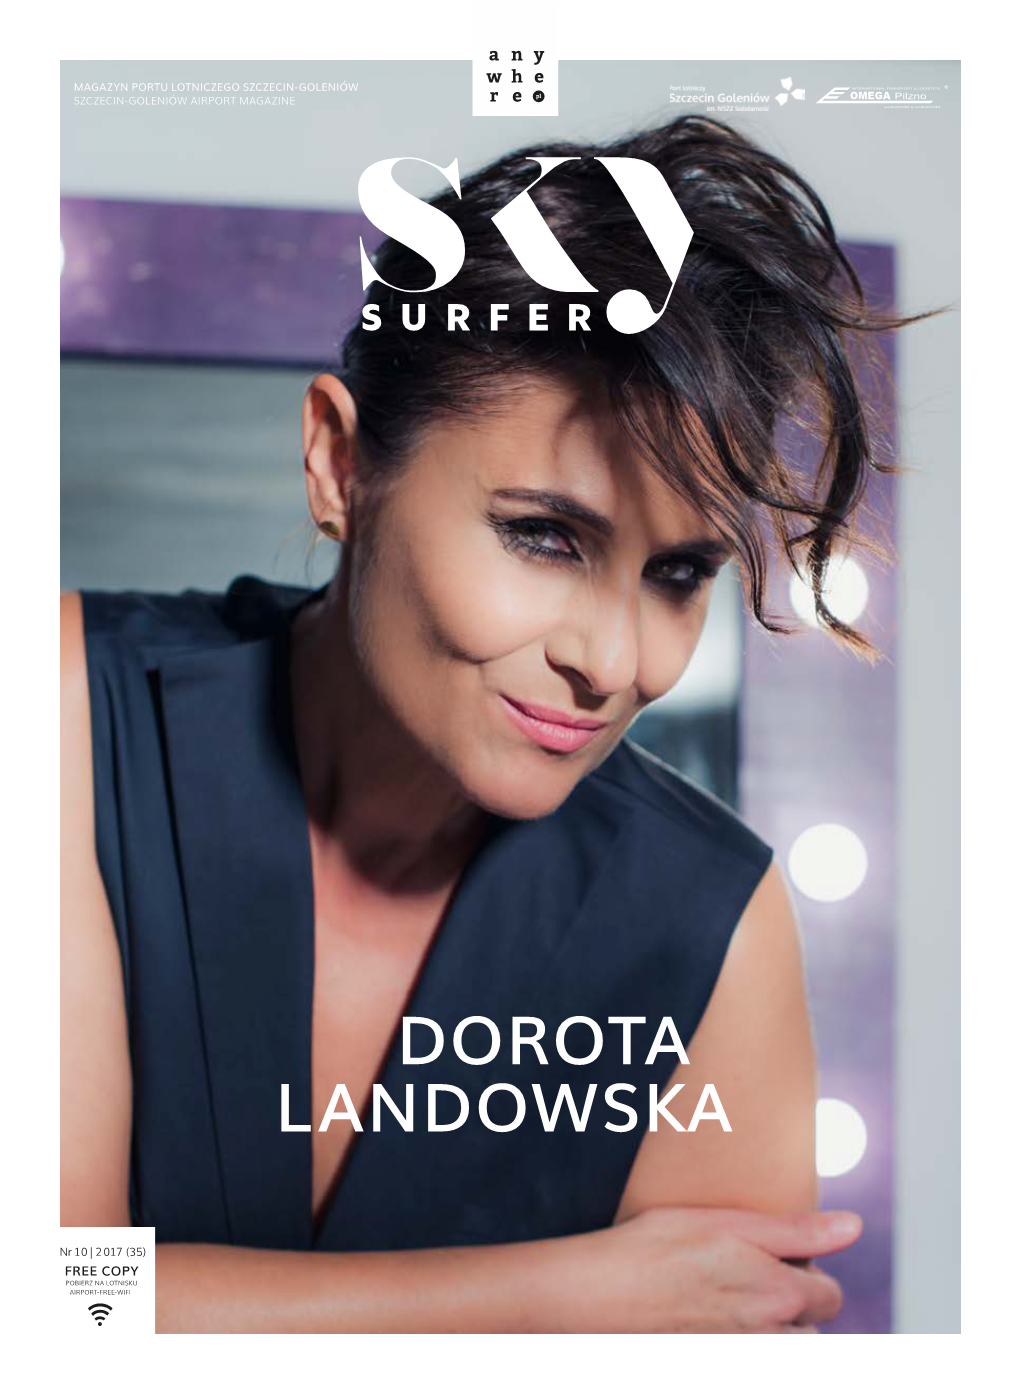 Landowska Dorota